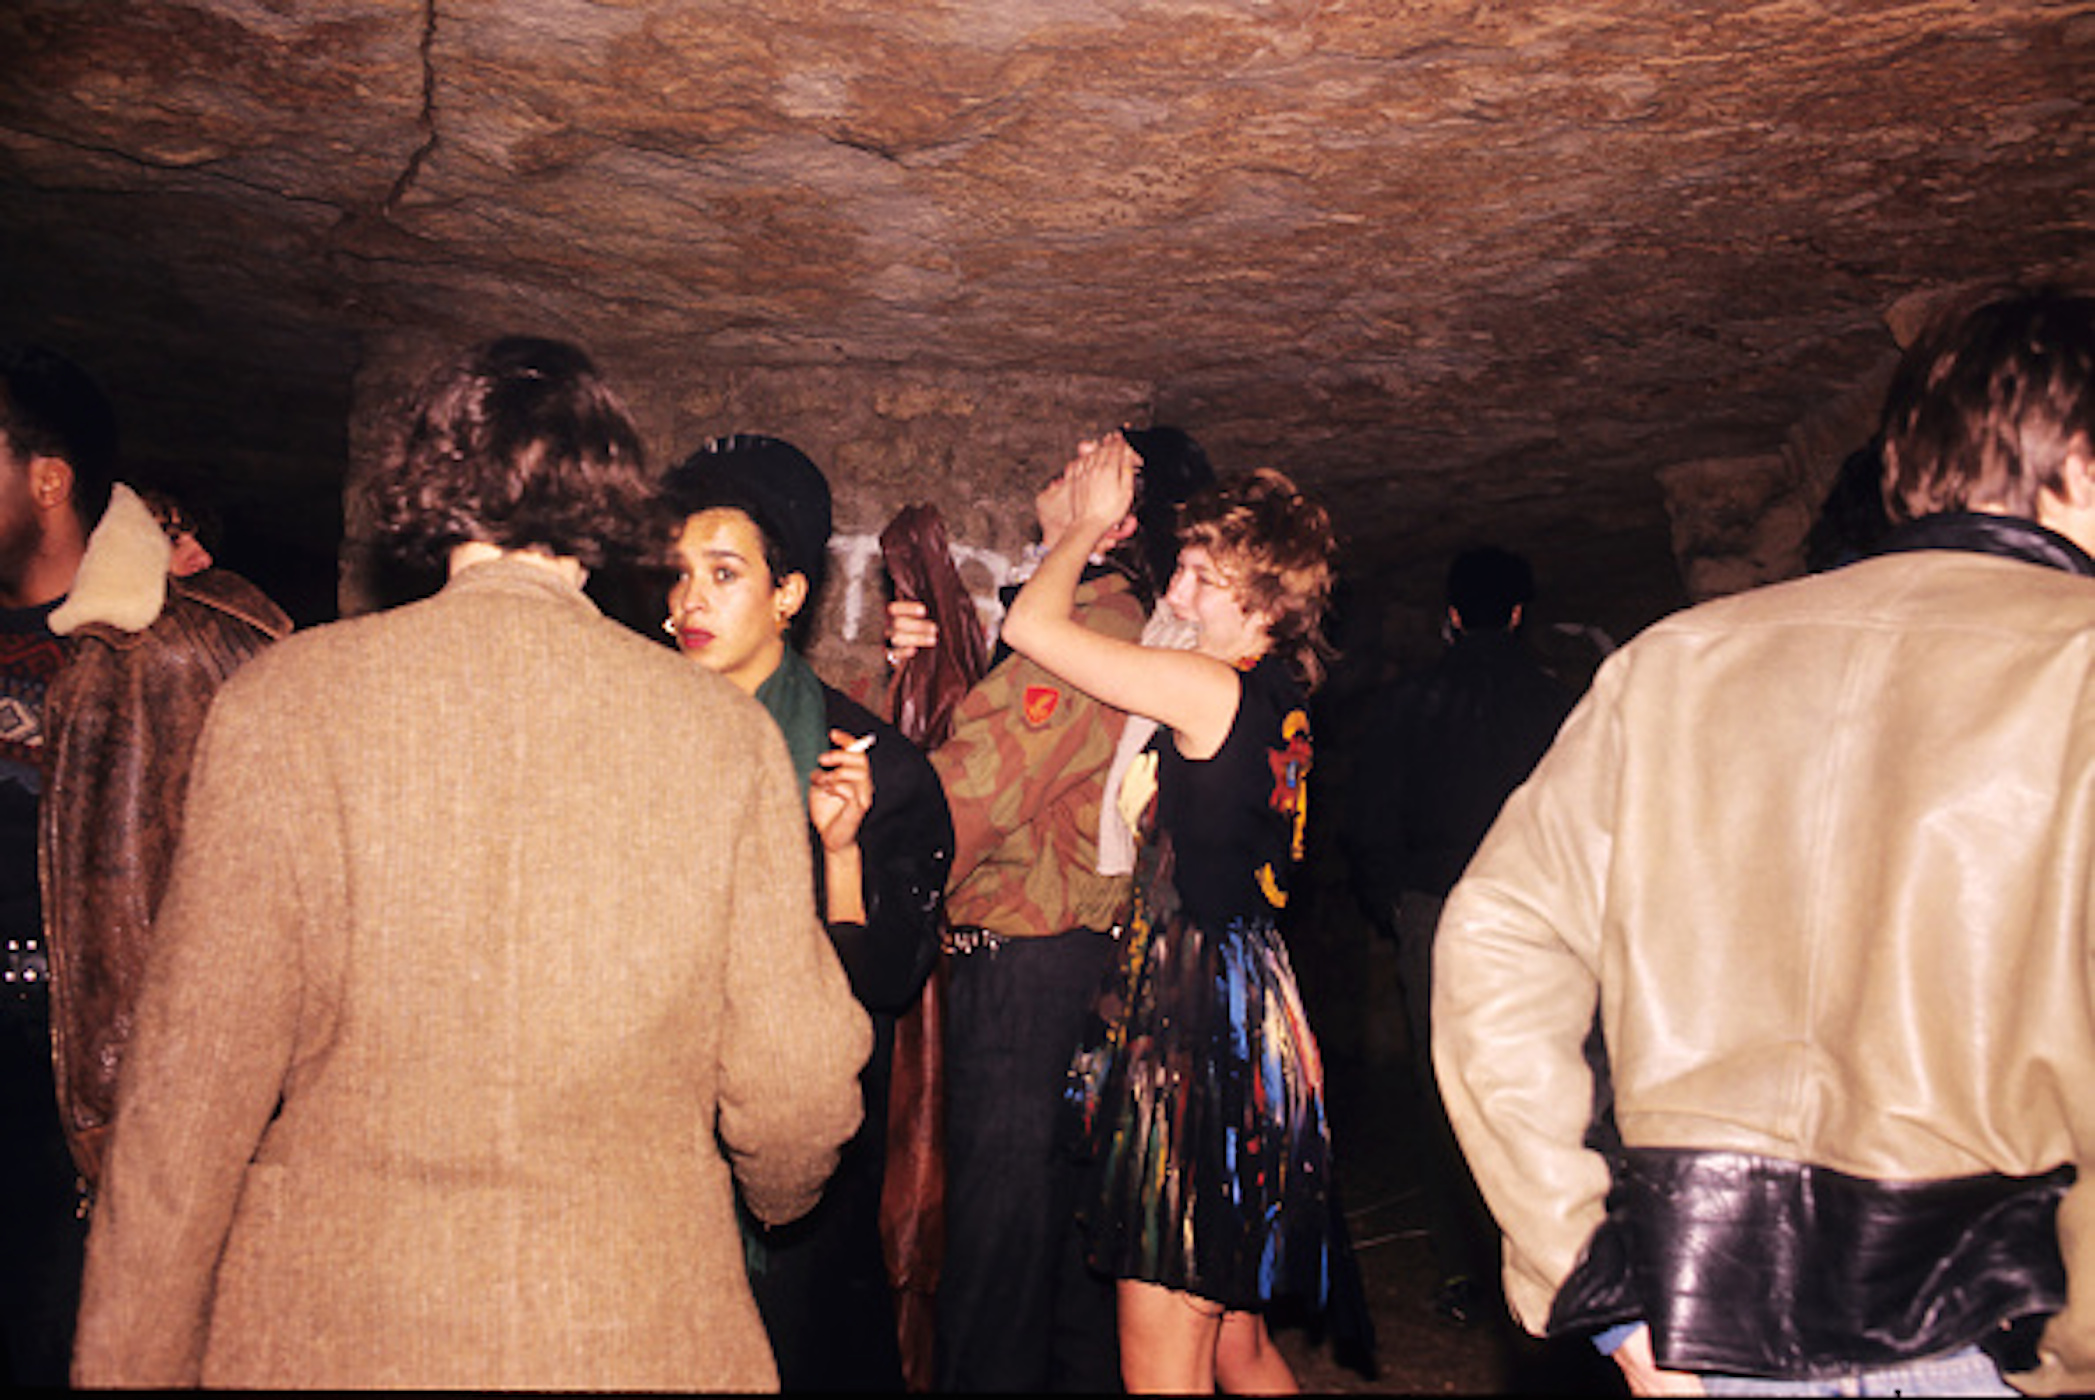 Une fête dans les catacombes dans les années 1990 © Getty Images / Foc Kan